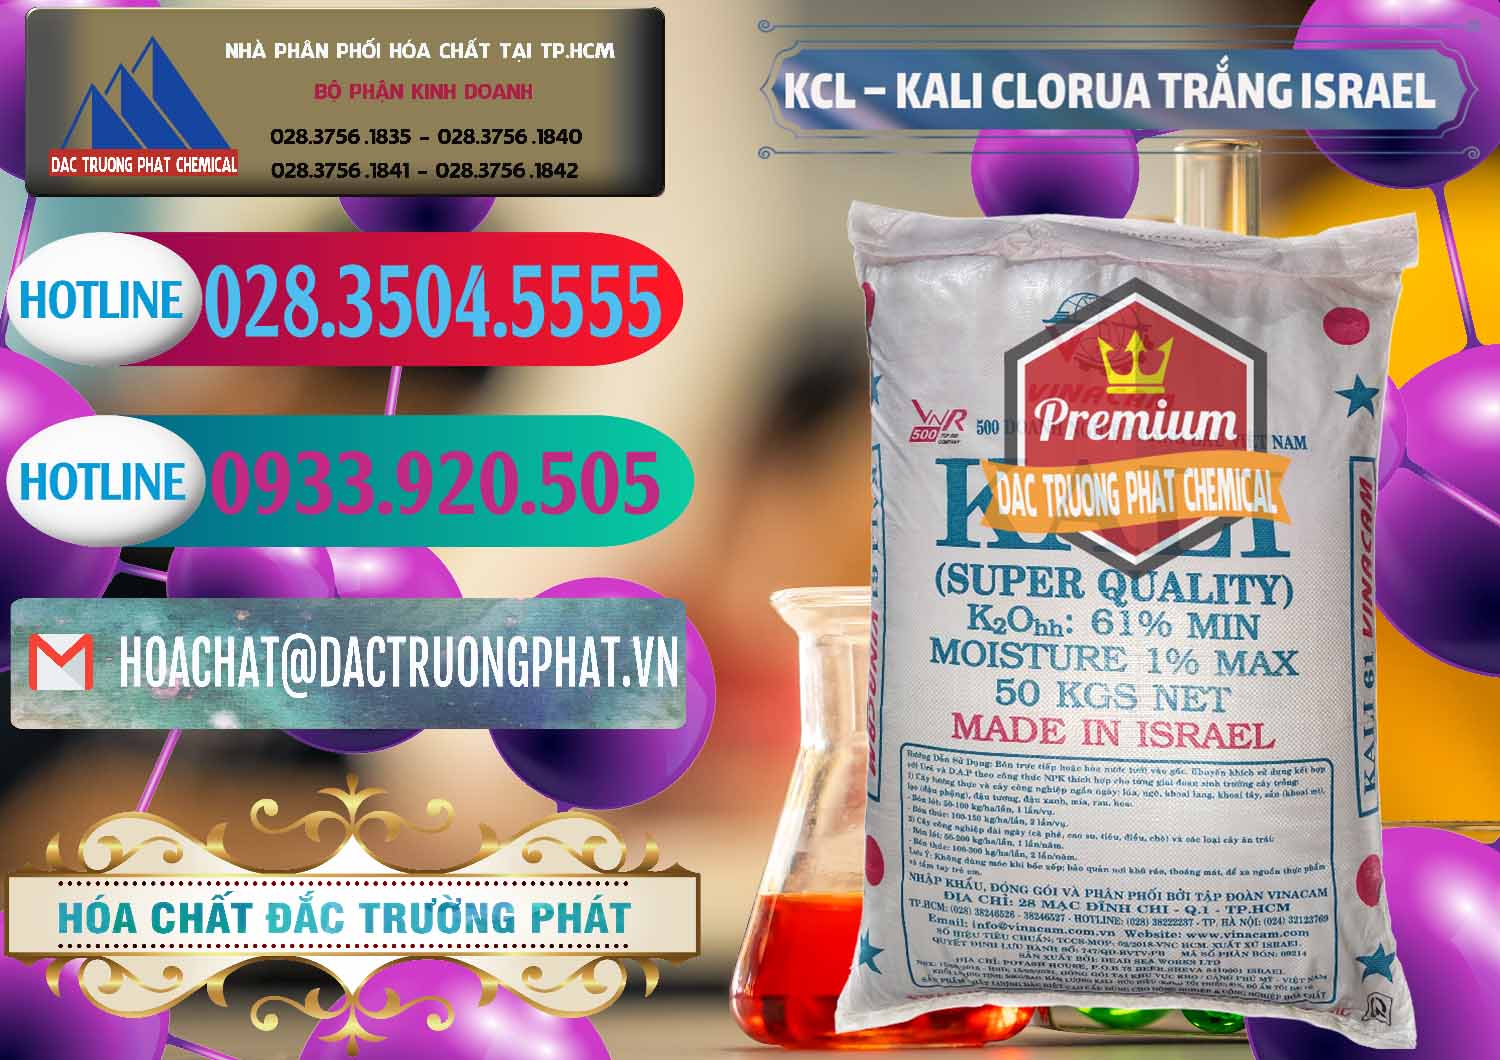 Cty cung cấp và bán KCL – Kali Clorua Trắng Israel - 0087 - Phân phối & bán hóa chất tại TP.HCM - truongphat.vn